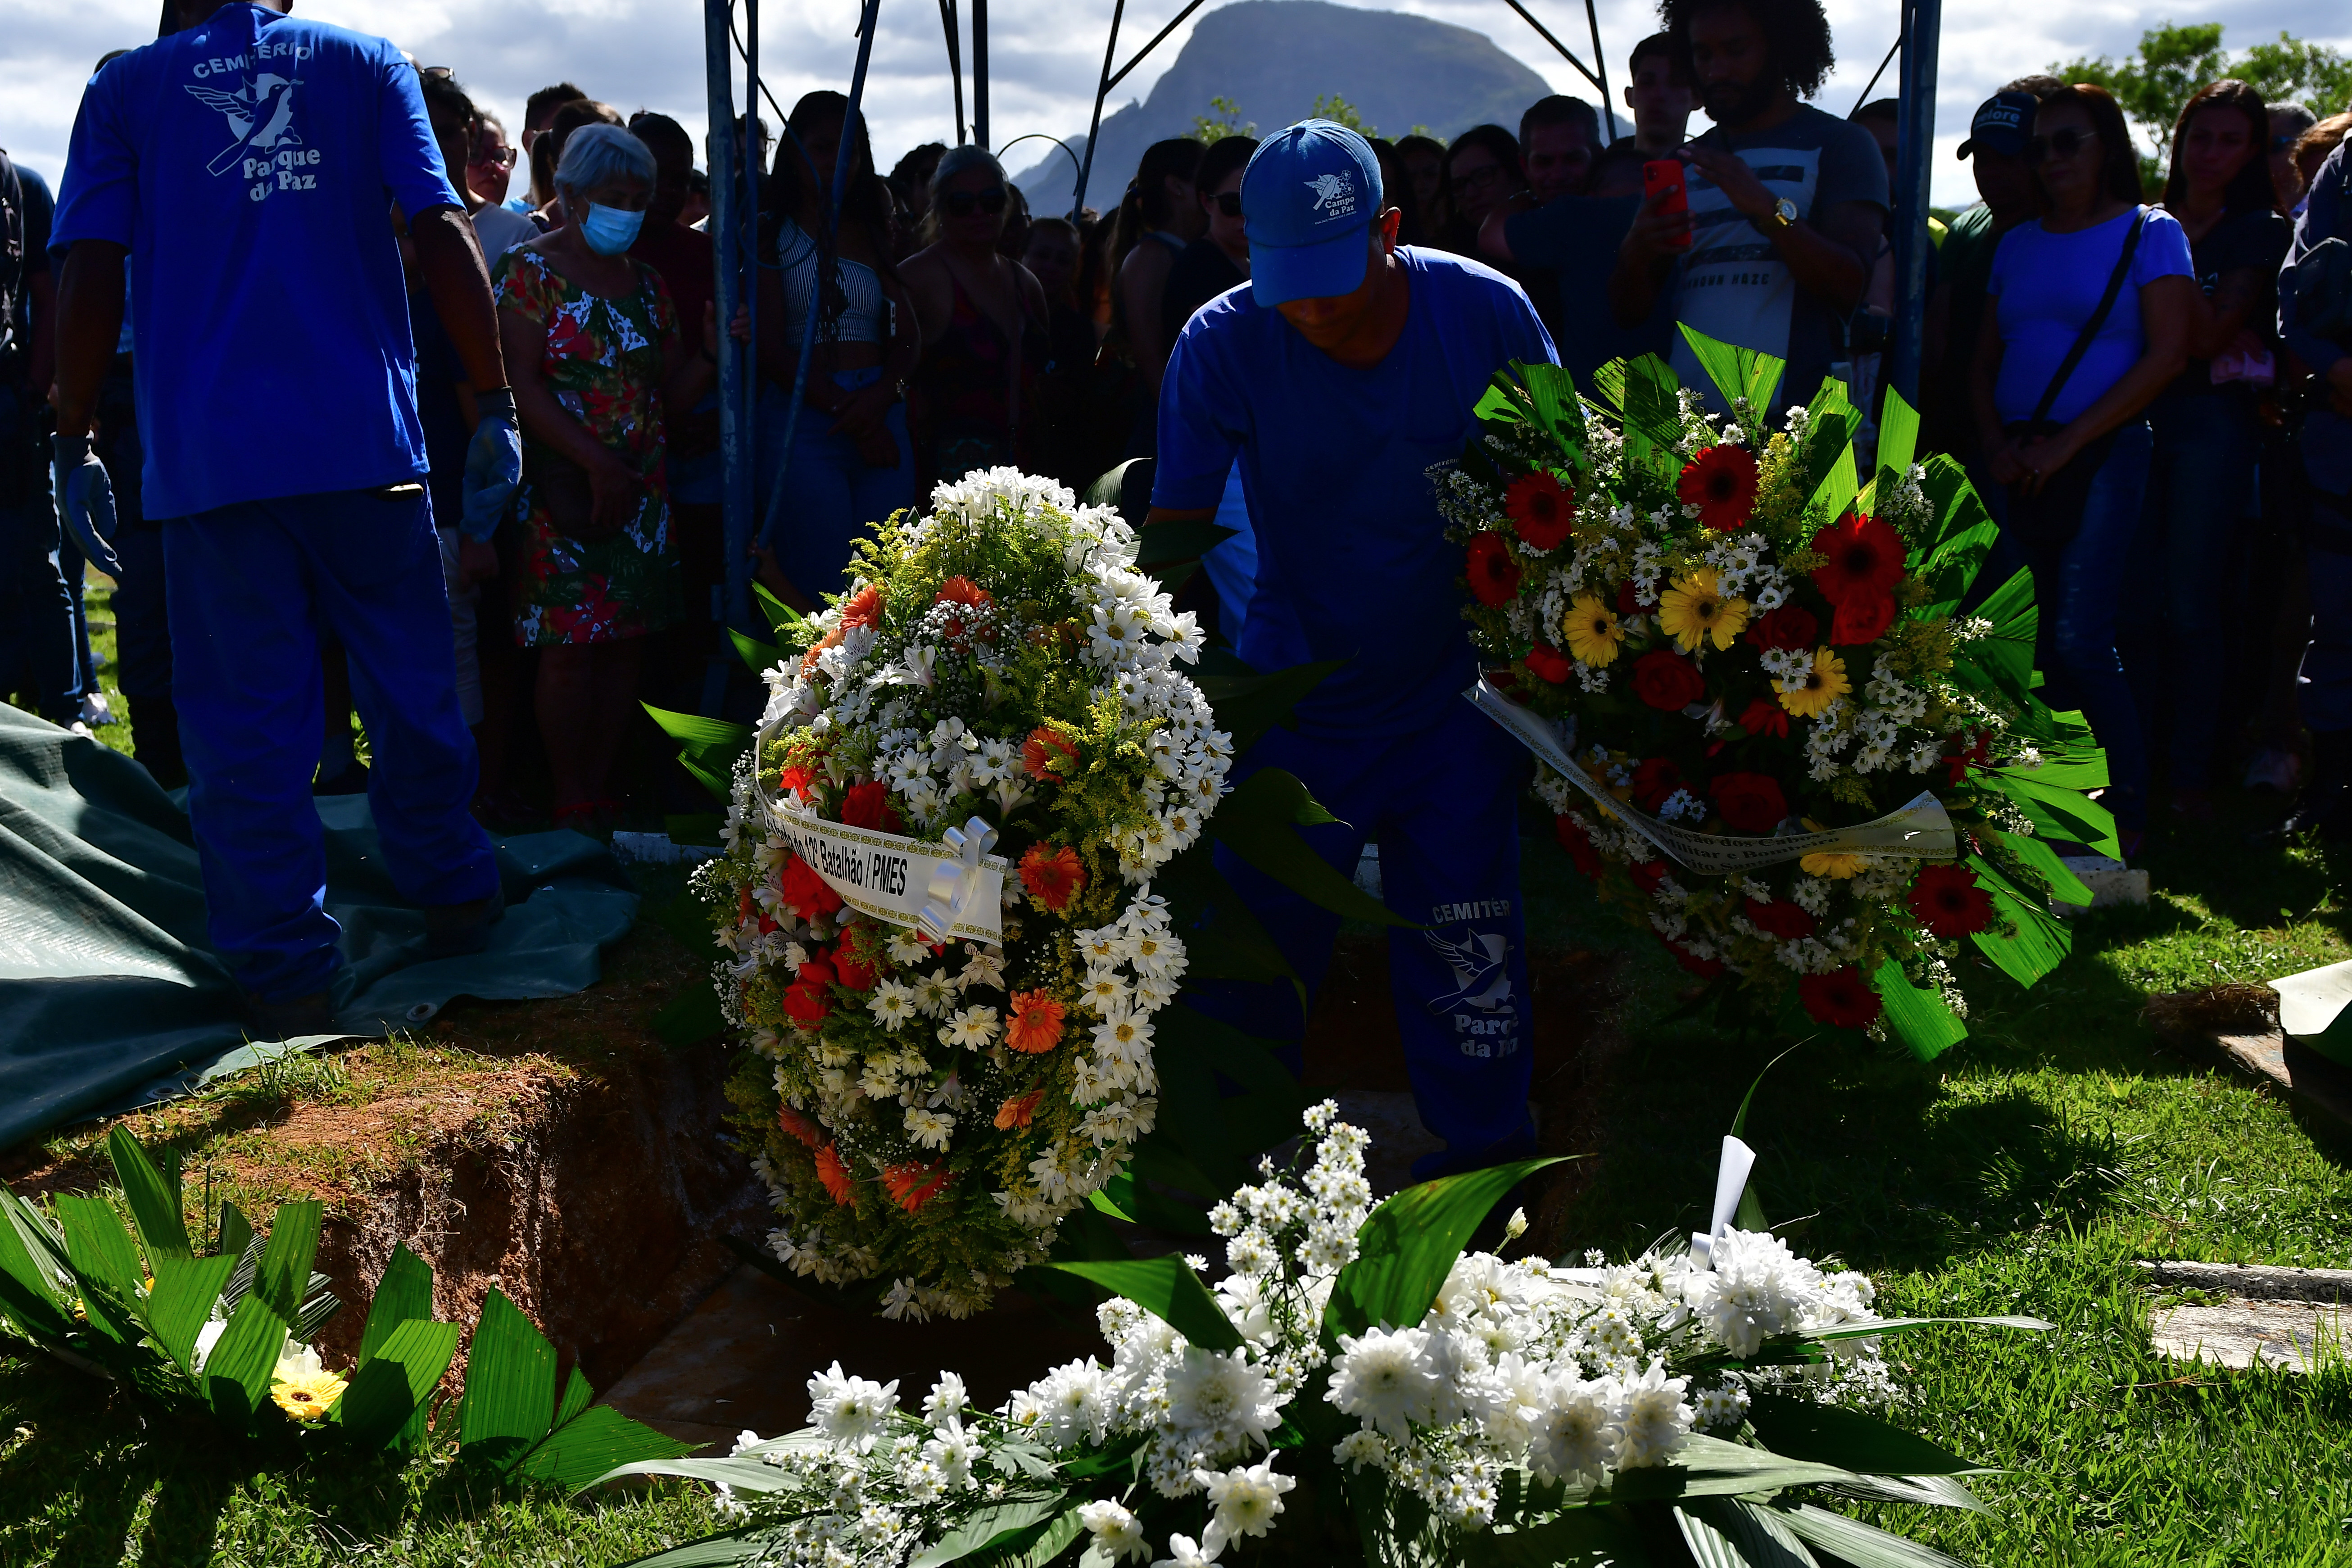 Sepultamento do soldado da polícia militar no cemitério Parque da Paz, em Cariacica, Eduardo Oliveira Celini foi morto durante uma ocorrência